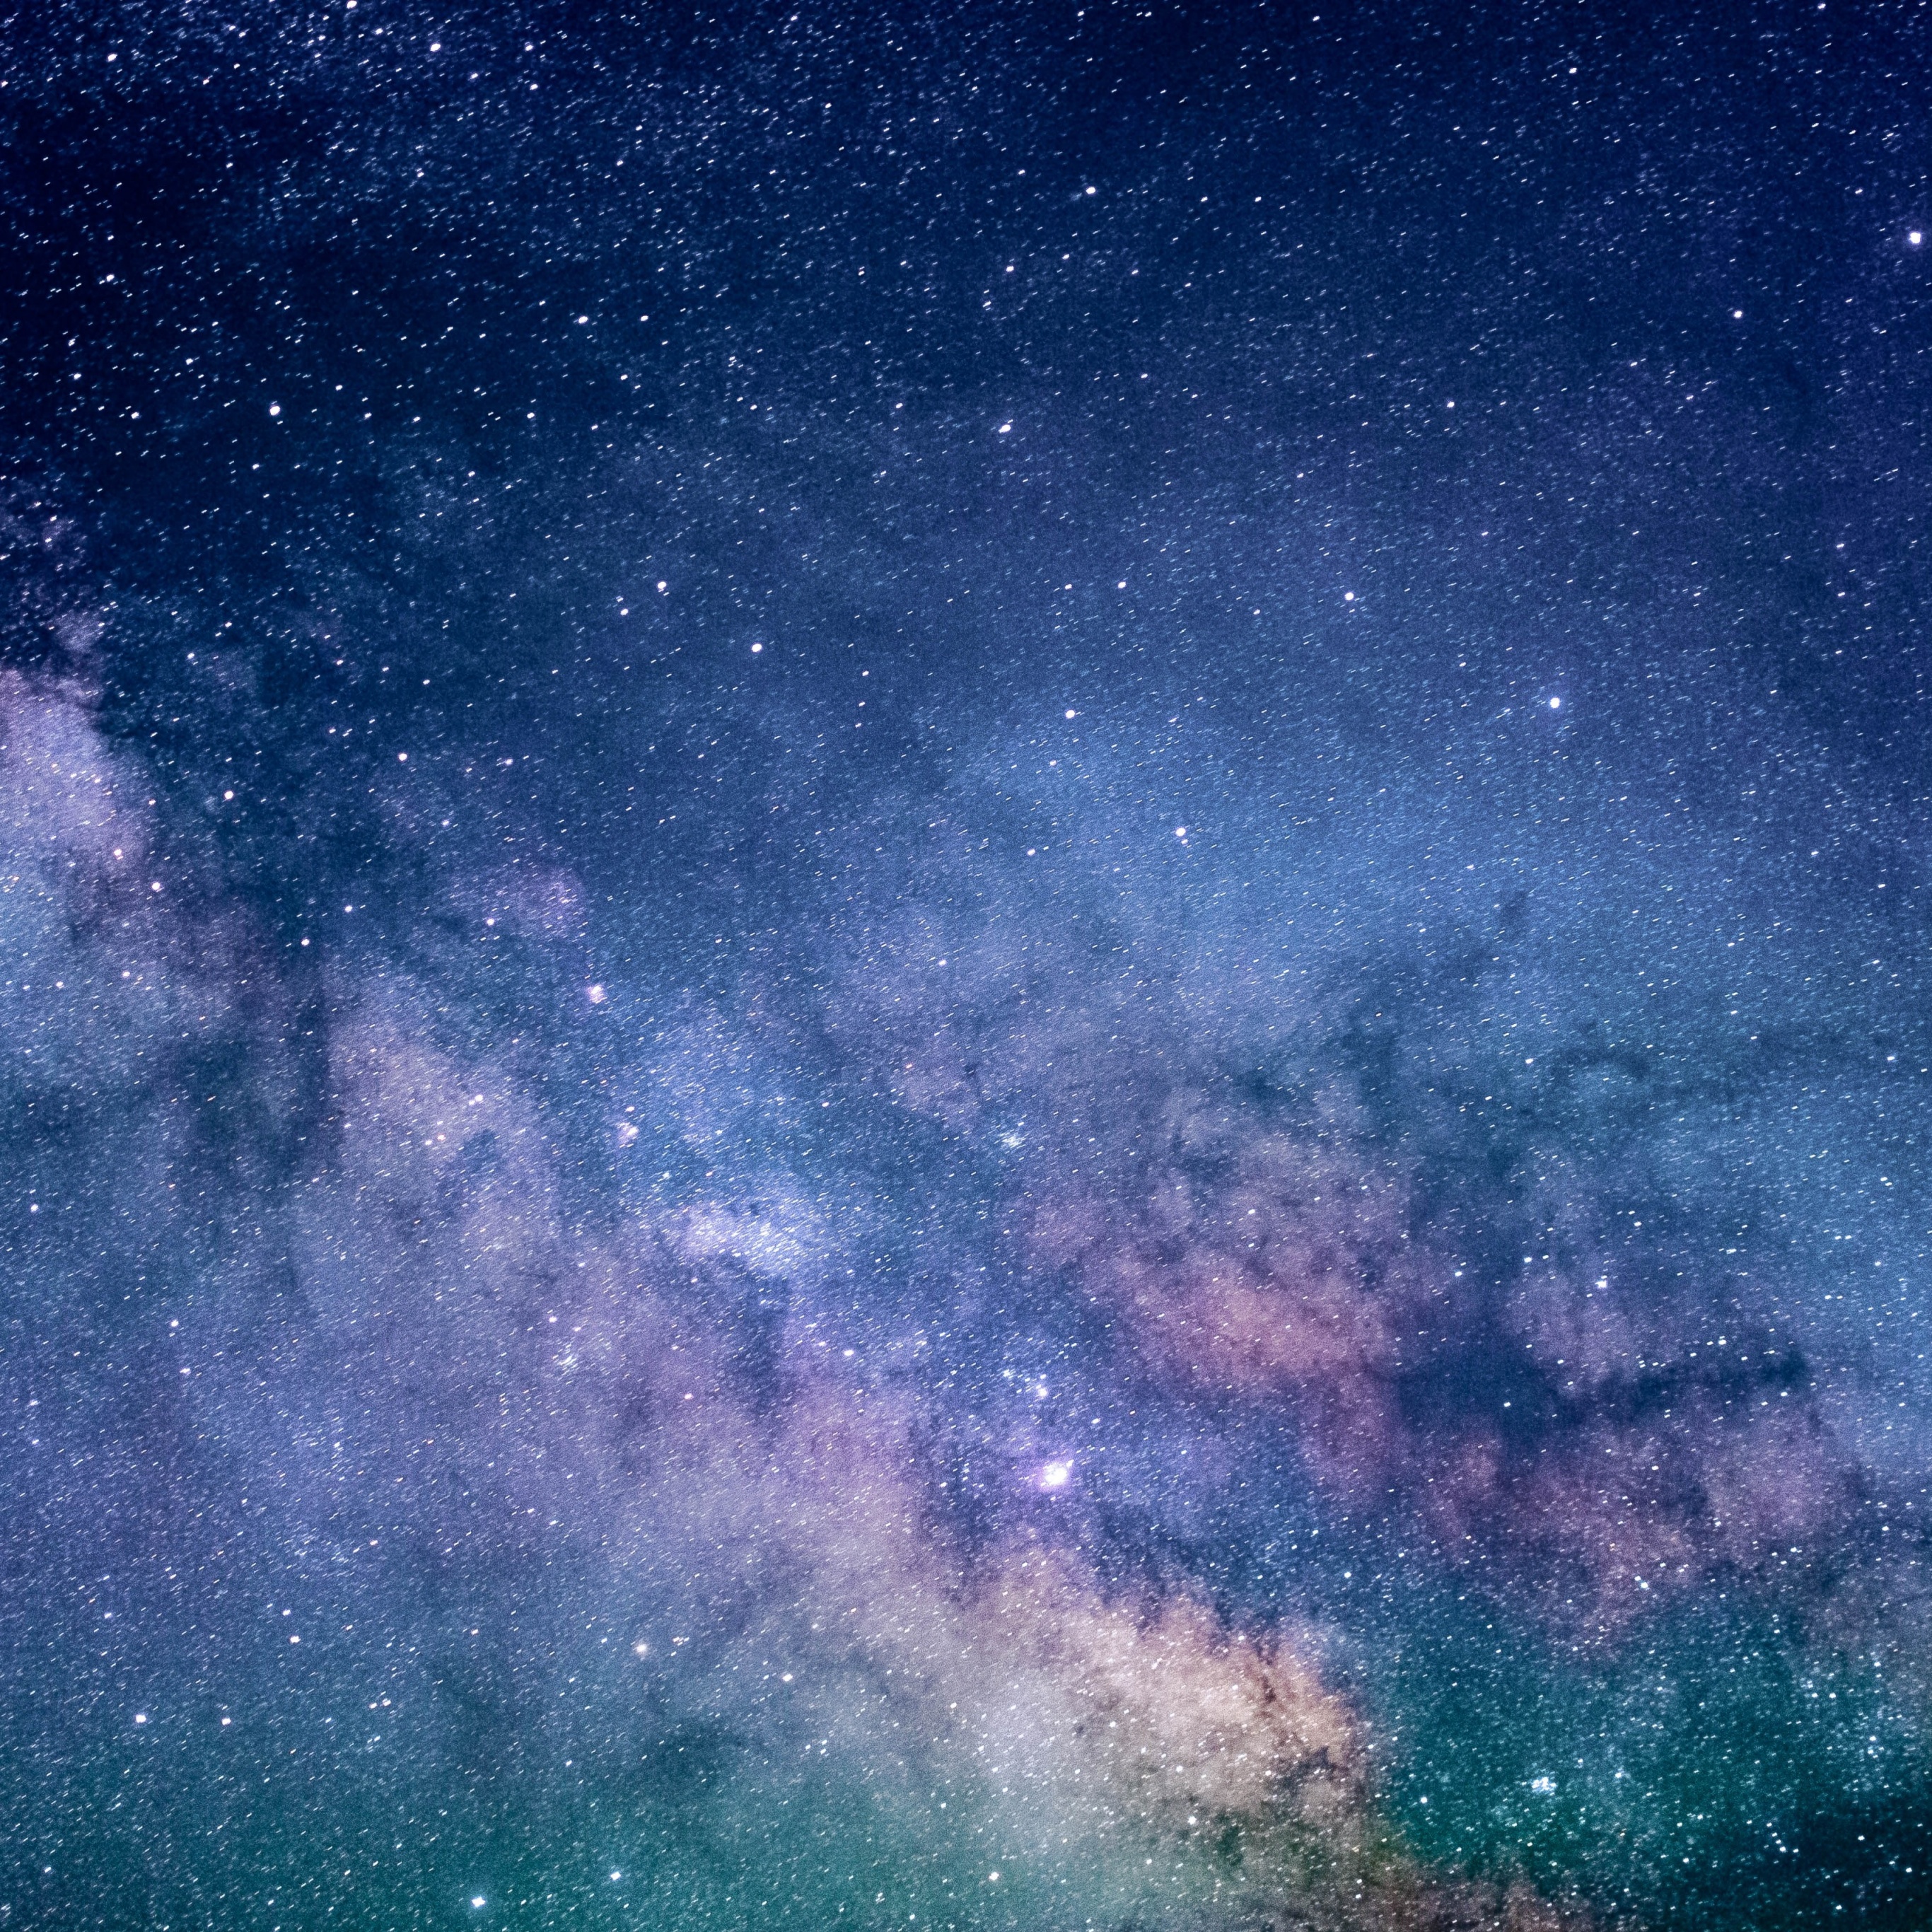 Lưu giữ cảnh vật đẹp nhất của thiên hà tại nơi làm việc hoặc nhà của bạn với bức hình nền Milky Way 4K chất lượng cao. Hình ảnh sống động và sắc nét đến từng chi tiết, giúp bạn có tổng thể tuyệt đẹp của cảnh vật Dải Ngân Hà tuyệt đẹp.